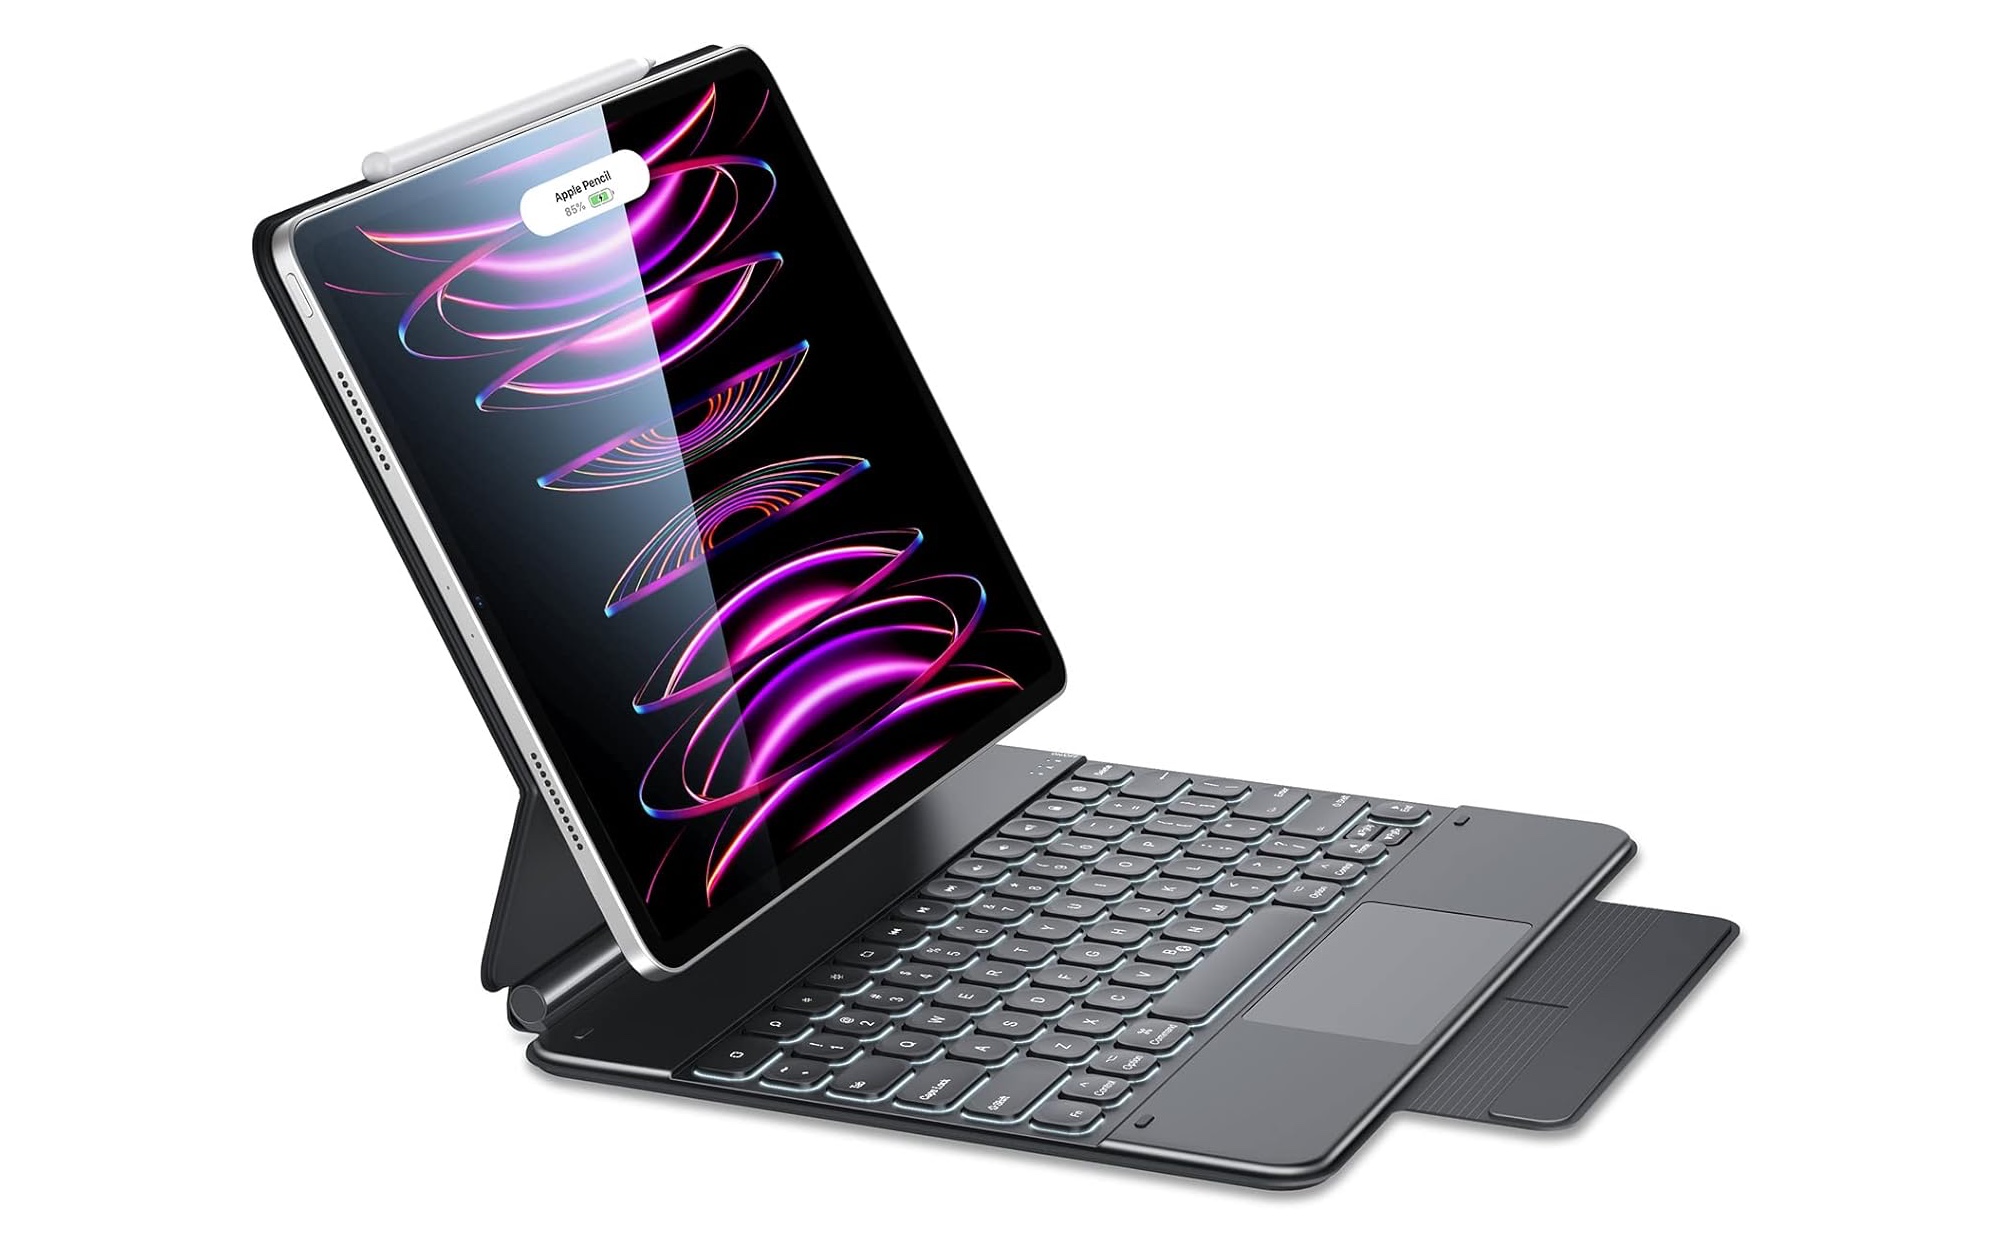 Best 11 iPad Pro Keyboard in 2023? Logitech Combo Touch 